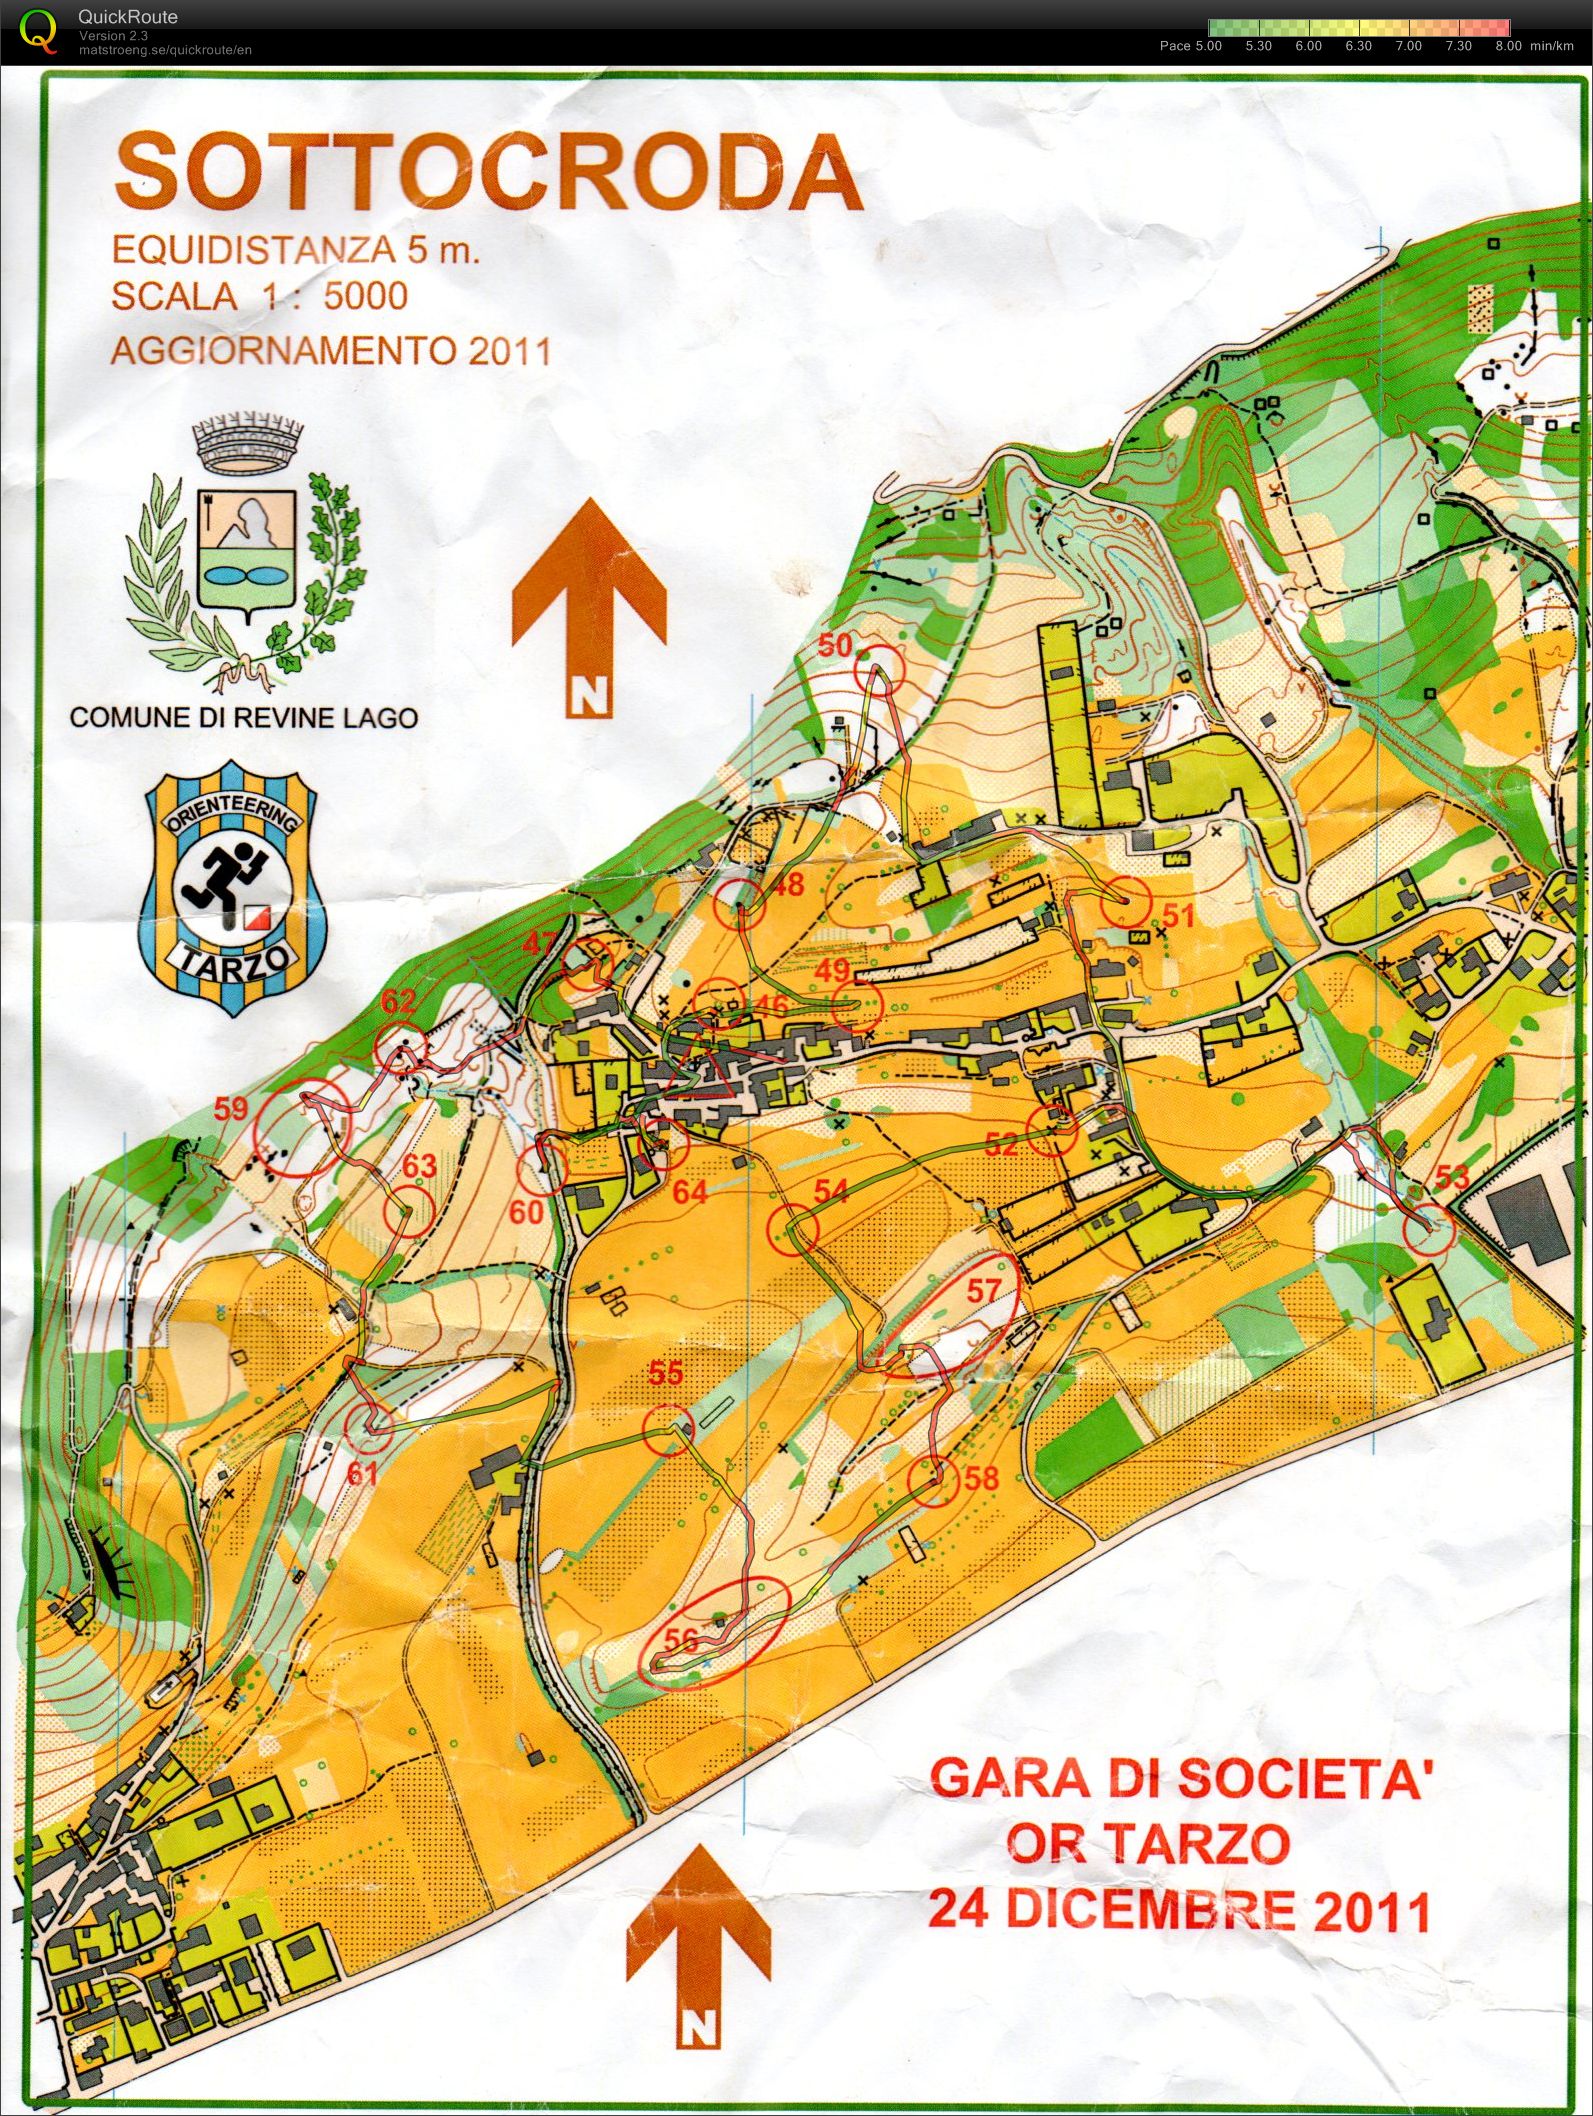 Gara sociale (2011-12-24)